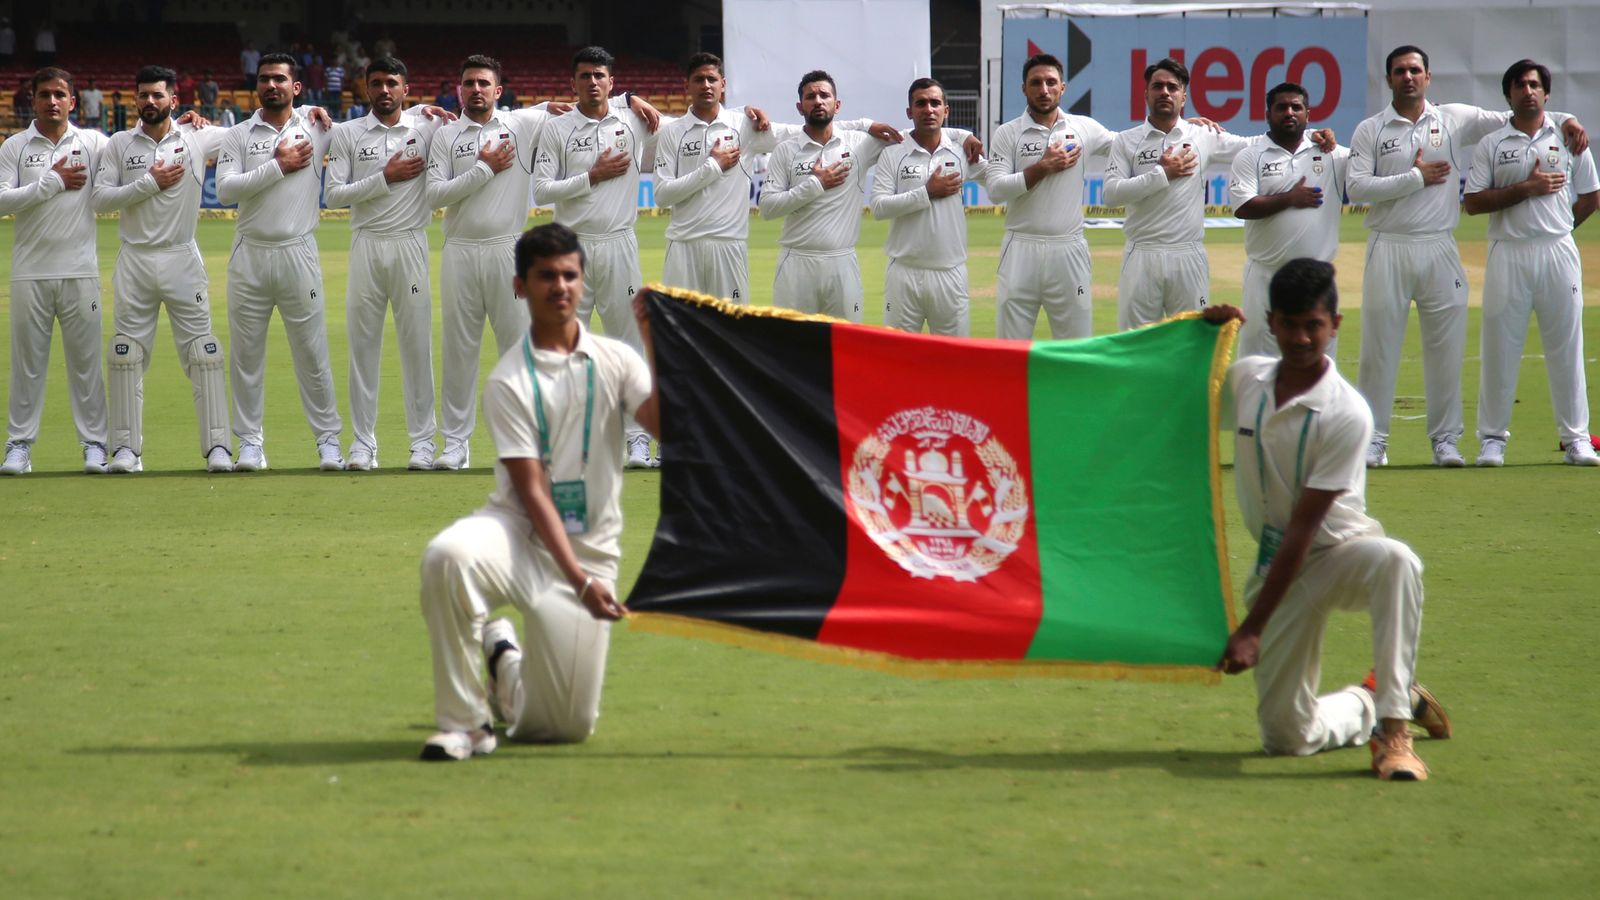 Australien bricht ODI-Serie gegen Afghanistan wegen Einschränkungen der Rechte von Frauen und Mädchen durch die Taliban ab |  Cricket-Neuigkeiten